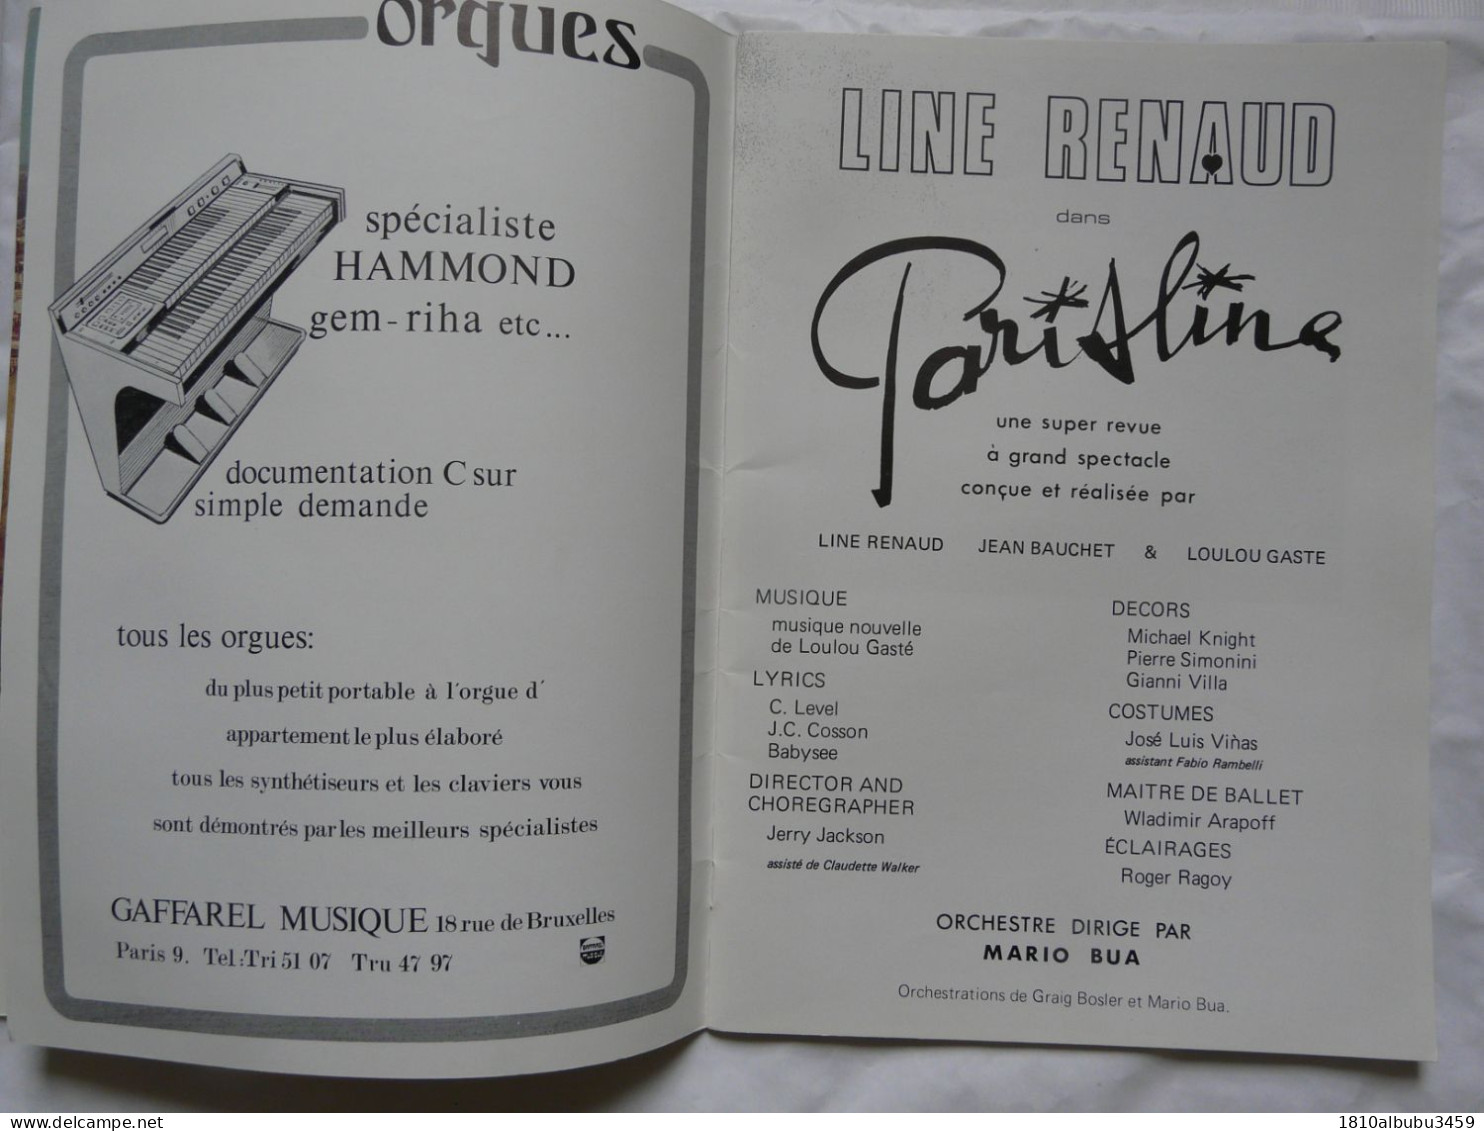 RARE - PROGRAMME DEDICACE Par LINE RENAUD - CASINO DE PARIS - Une Super Revue - Musique